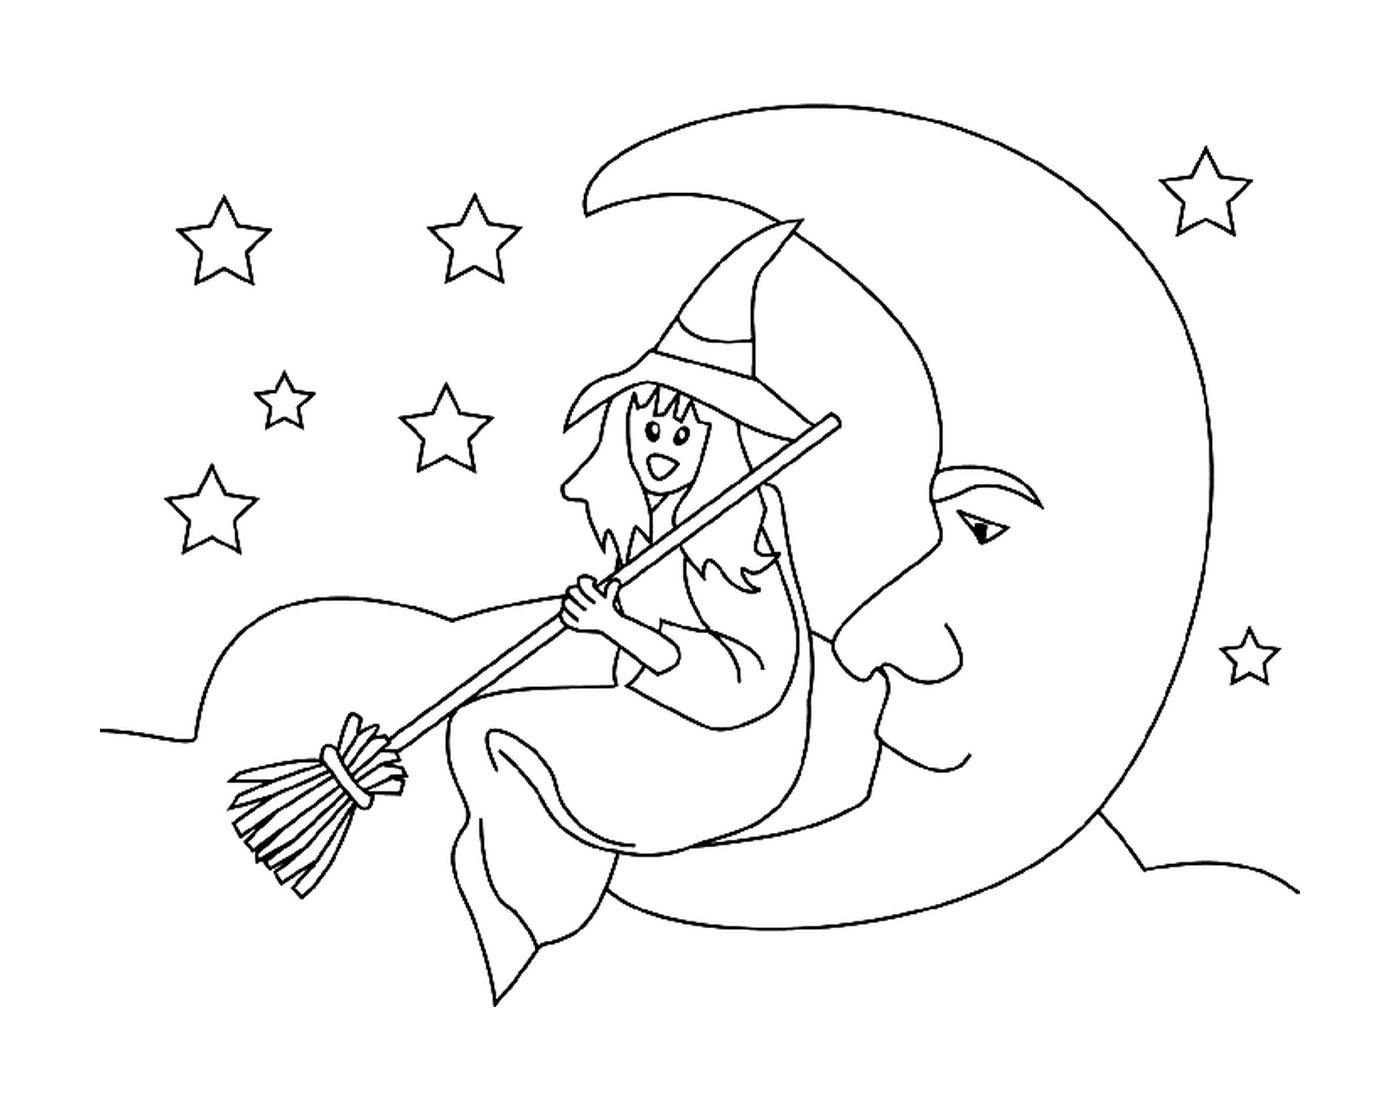  坐在月亮上的女巫 看着星星 